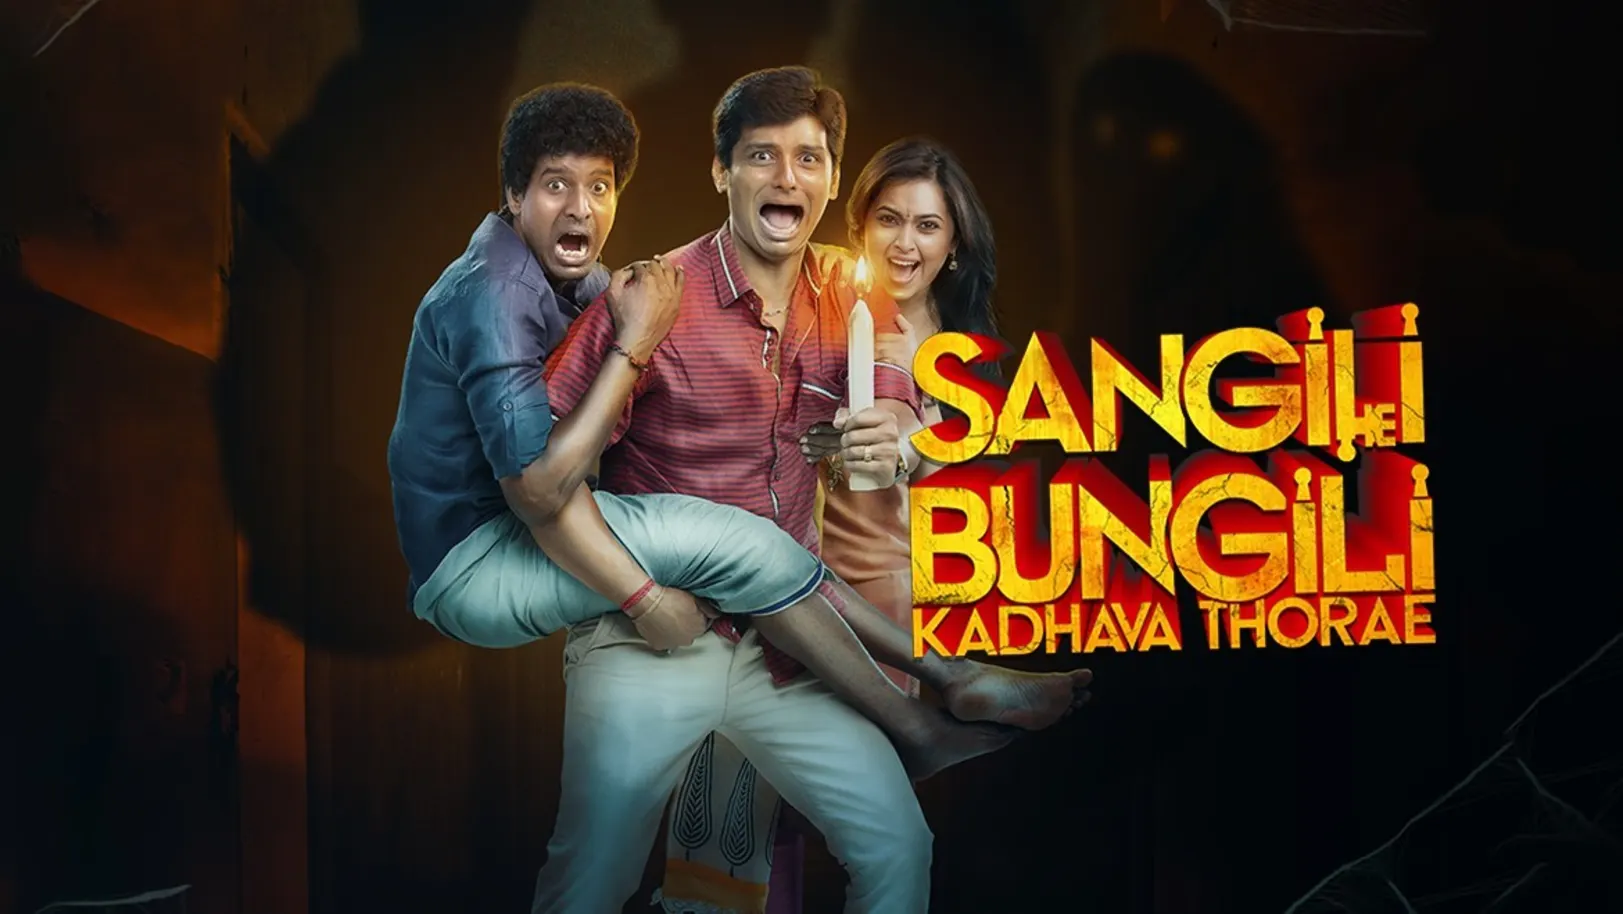 Sangili Bungili Kadhava Thorae Movie